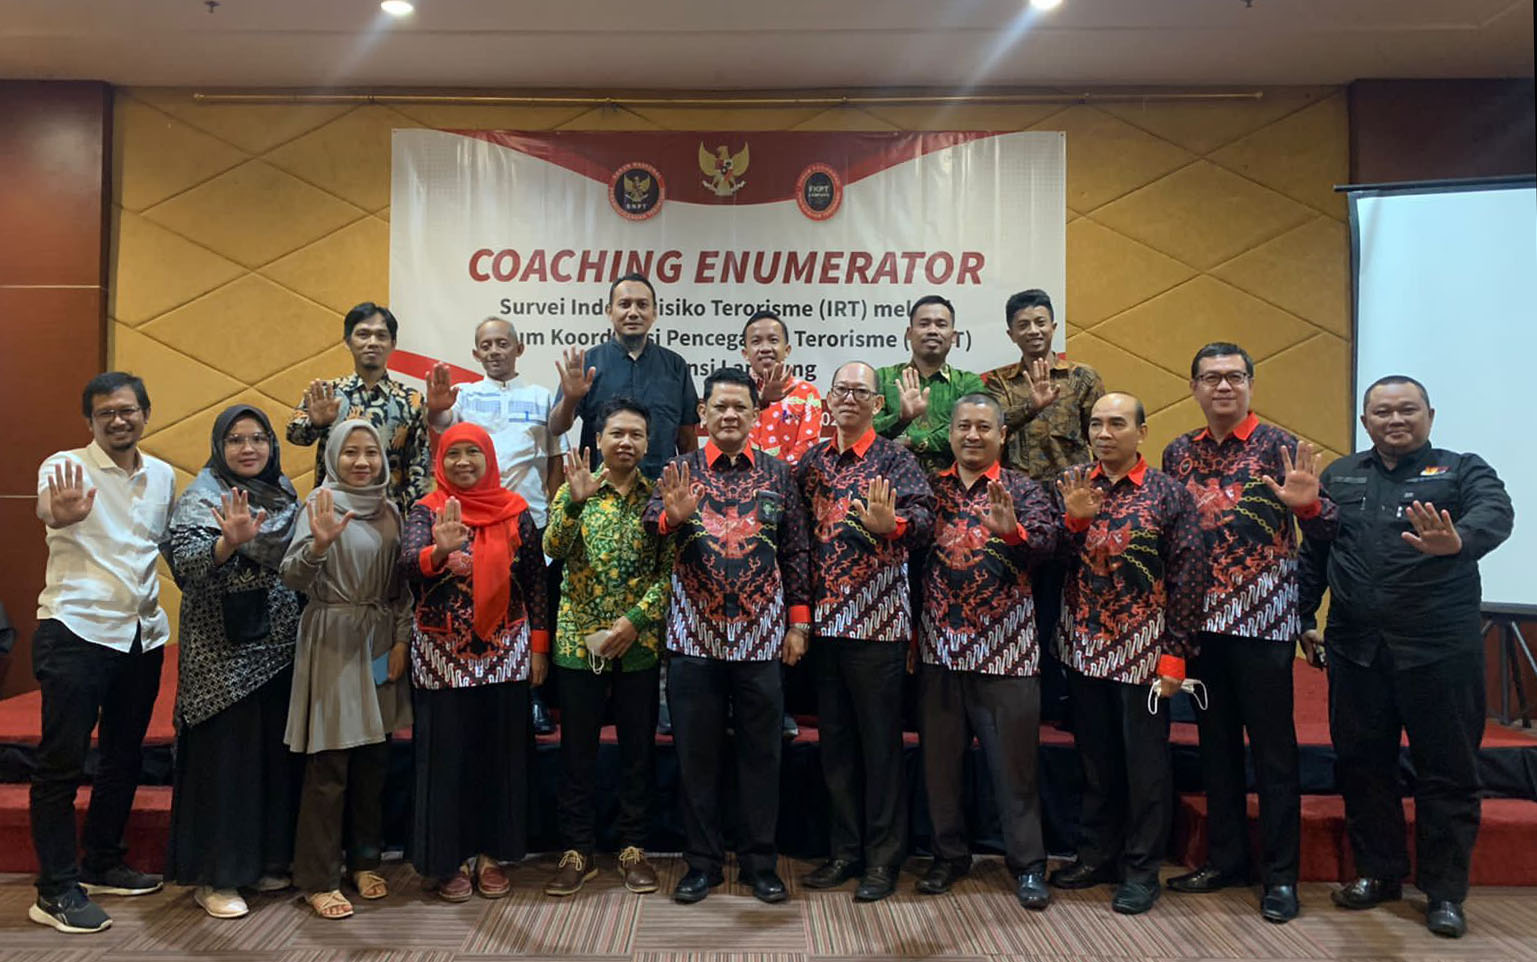 Antisipasi Ancaman Terorisme, BNPT-FKPT Lampung Gelar Coaching Enumerator